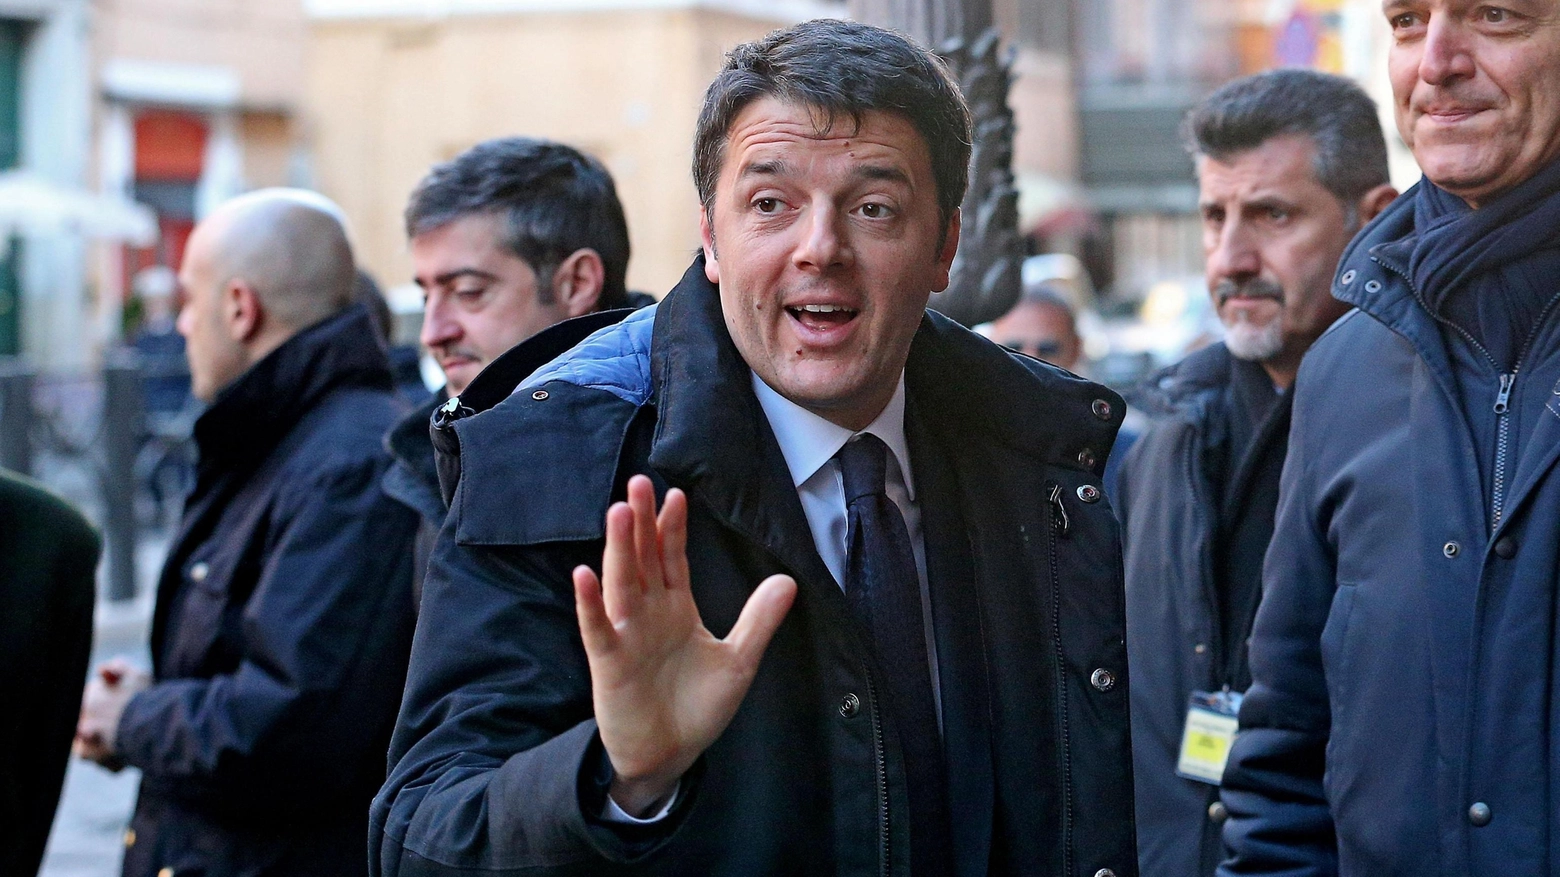 Un'immagine recente di Matteo Renzi (Roma, 28 gennaio 2015 - Ansa/Alessandro Di Meo)